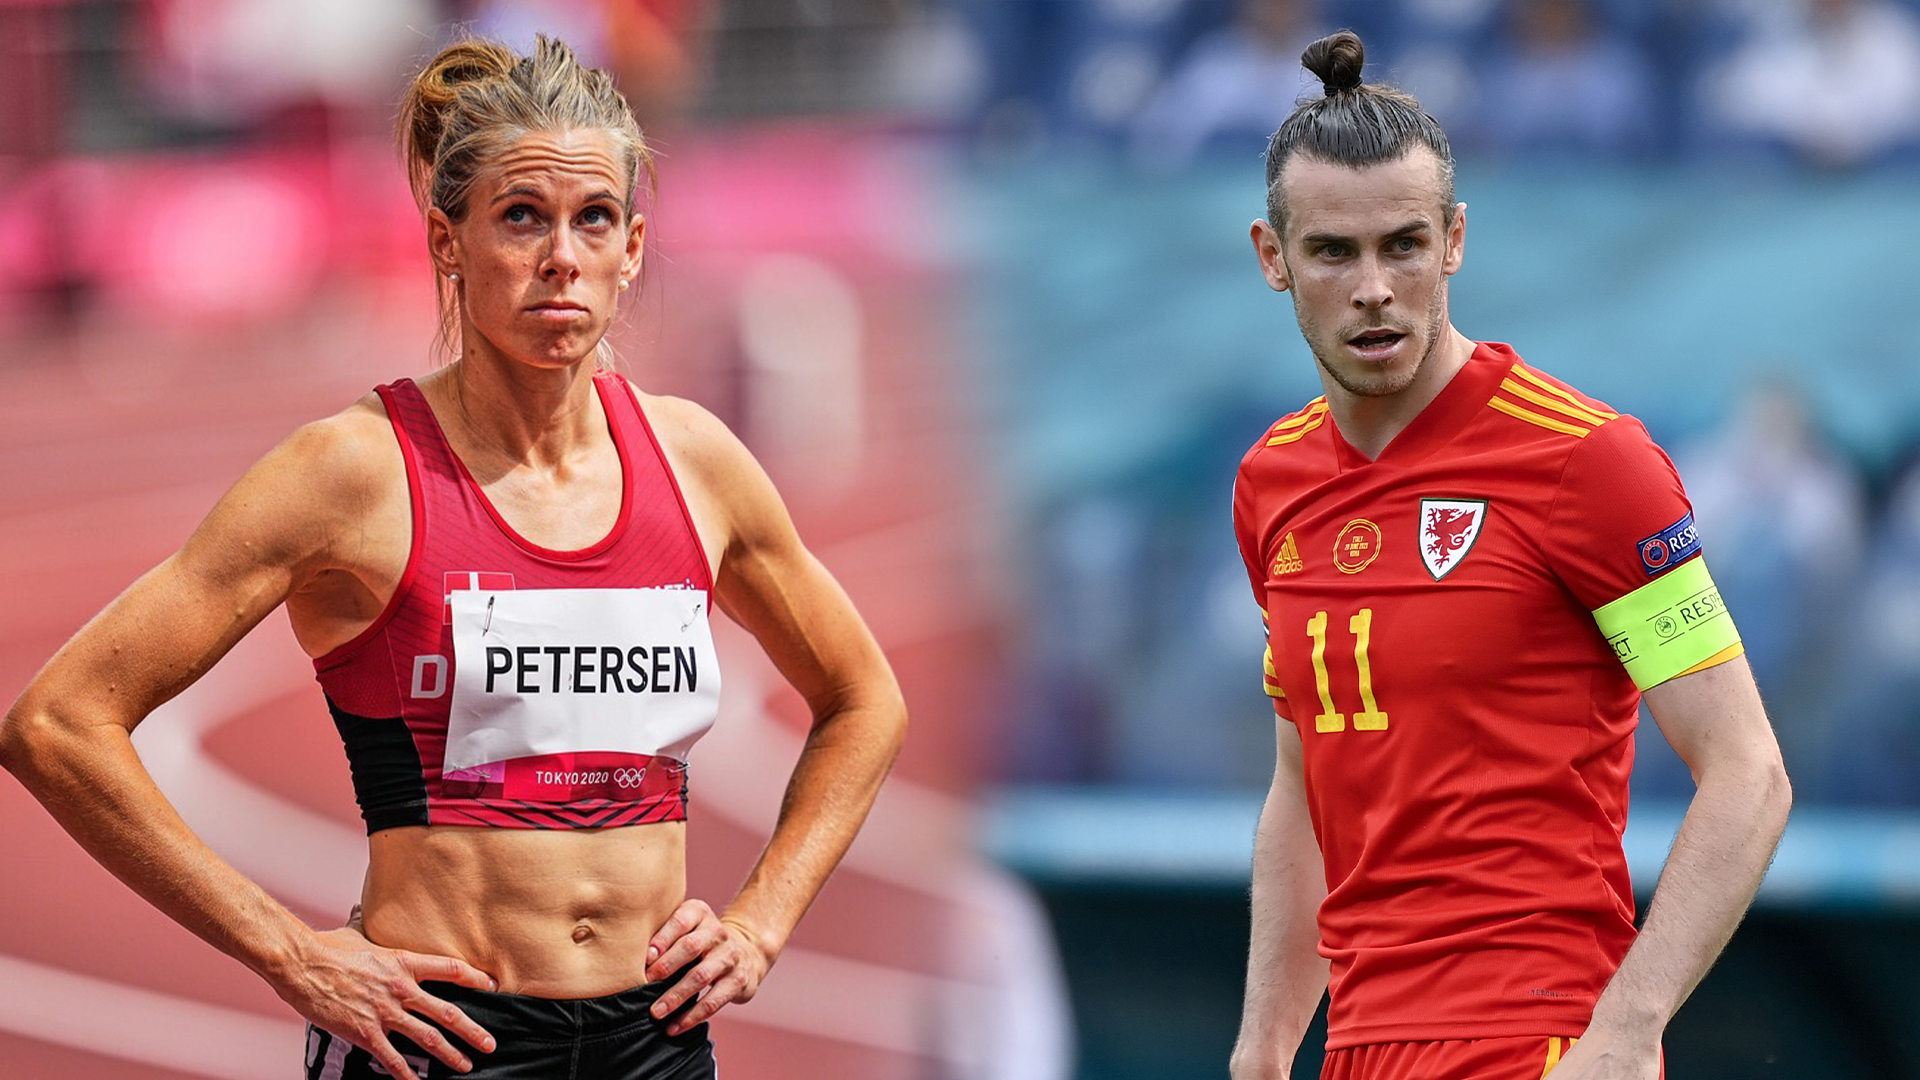 Obličej dánské překážkářky Sary Petersenové leckomu připomínal velšskou fotbalovou superstar Garetha Balea.